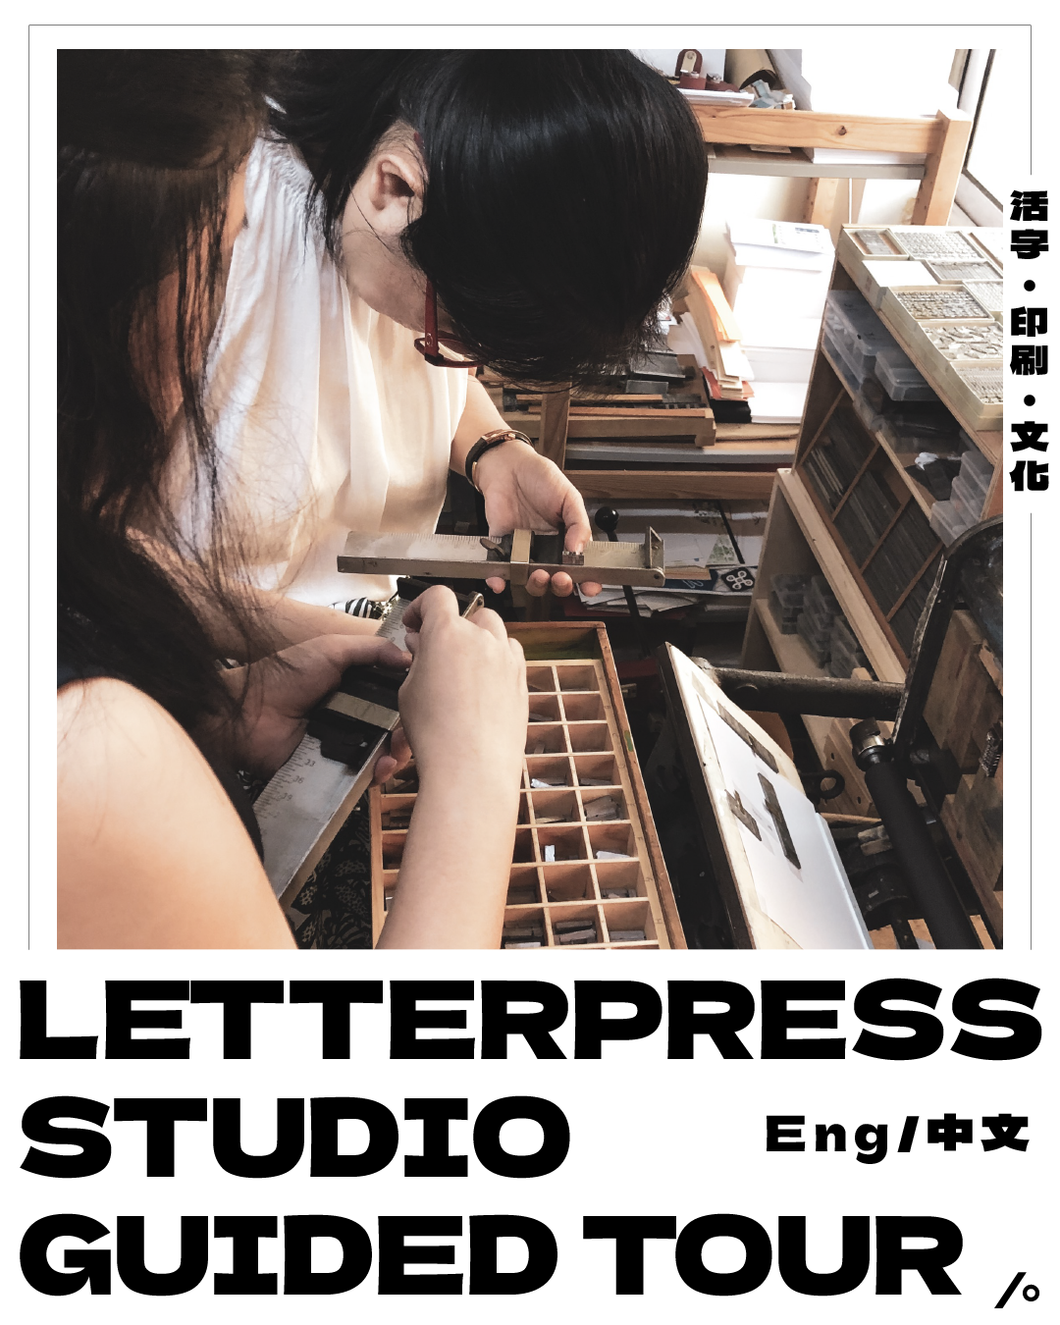 A -  Letterpress Guided Tour - Typesettingsg Studio 活版印刷工作室导览 (Eng/Chn)